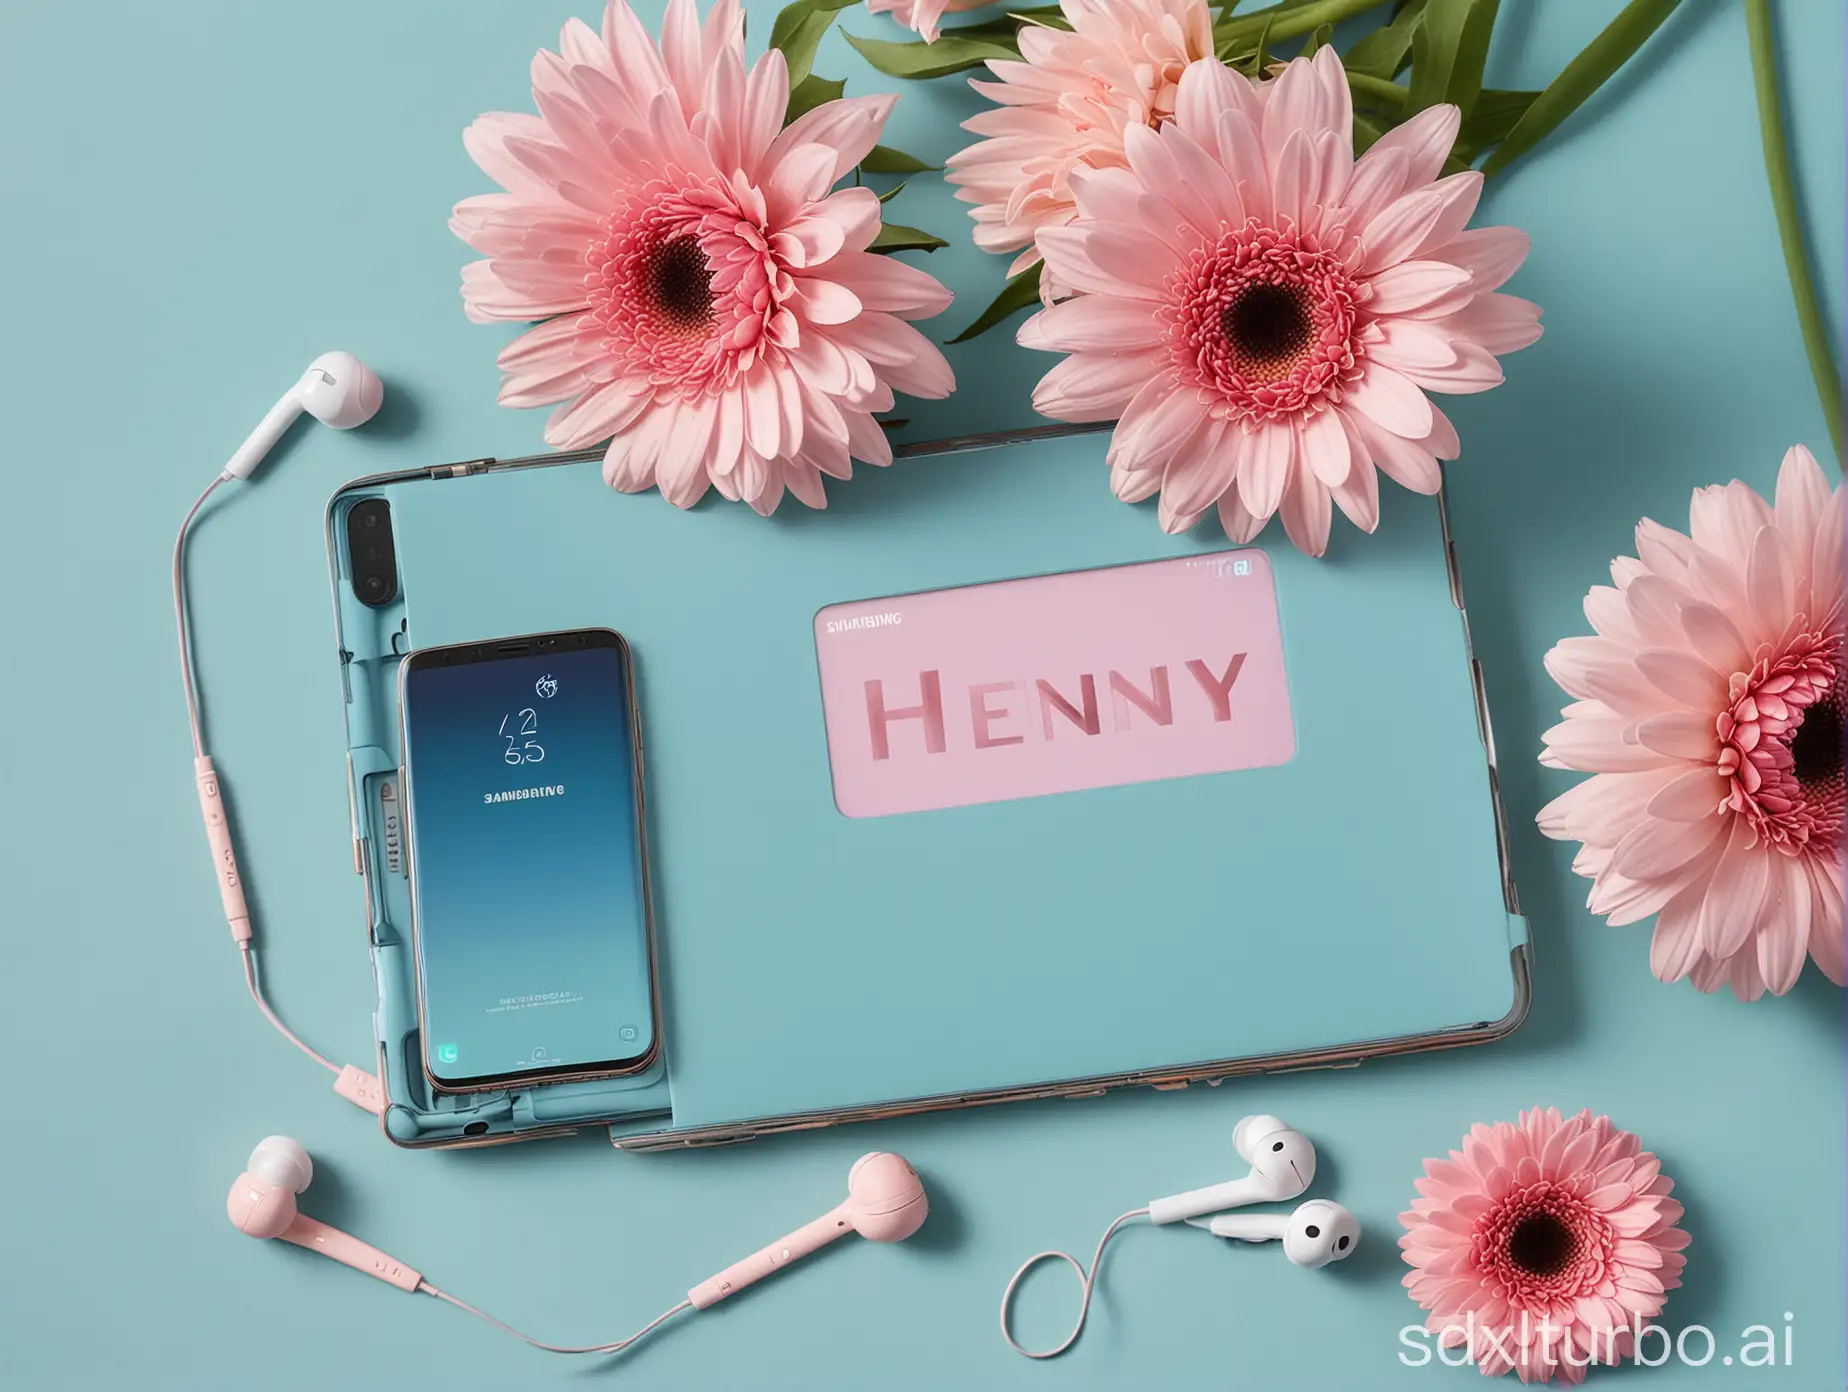 Tekst Henny op samsung laptop, samsung mobile phone, earbuds, palm, light pink gerberas, background blue aquablue